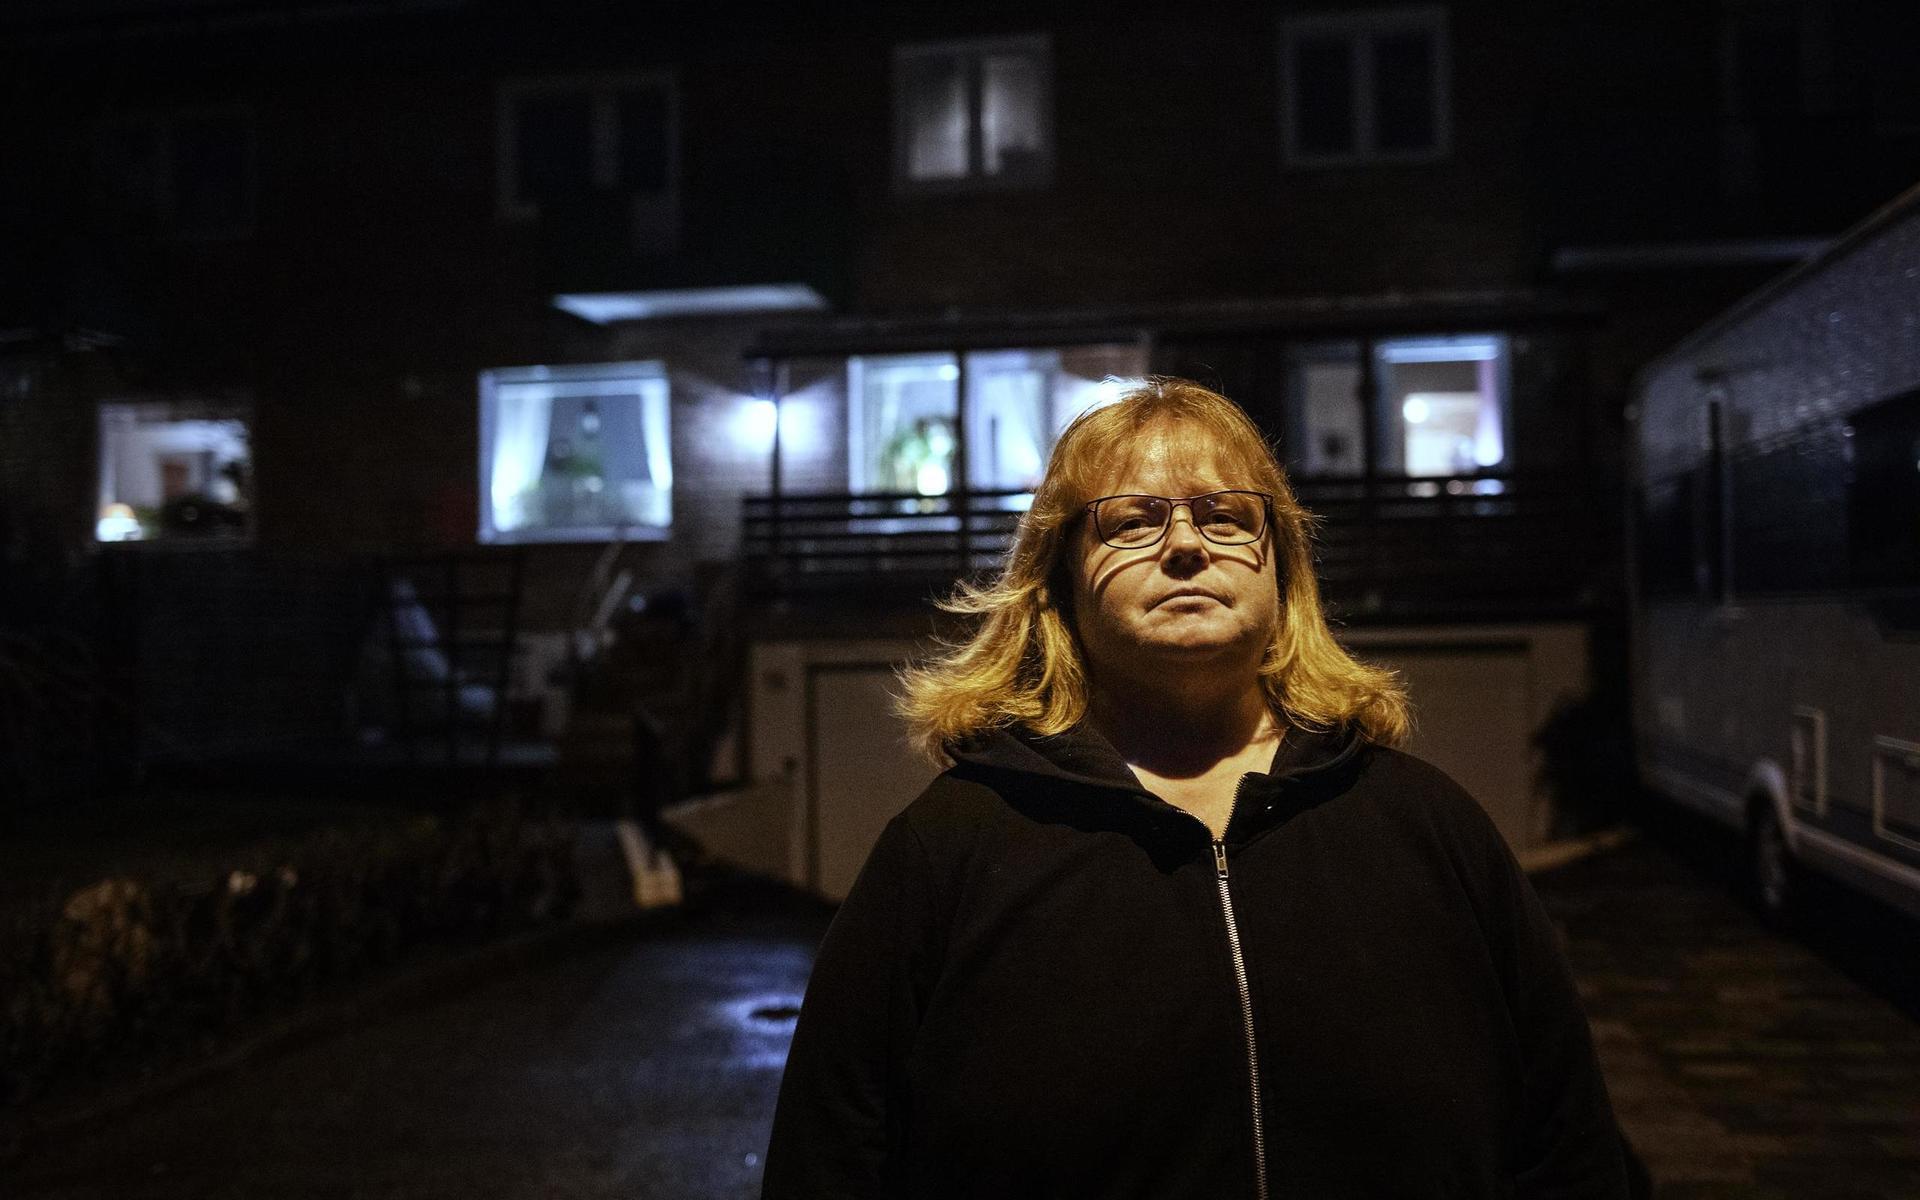 Boende vittnar om en frän lukt på Hisingen. Susanne Hällstén bor i Lundby, och hon tycker att doften sticker i näsan.